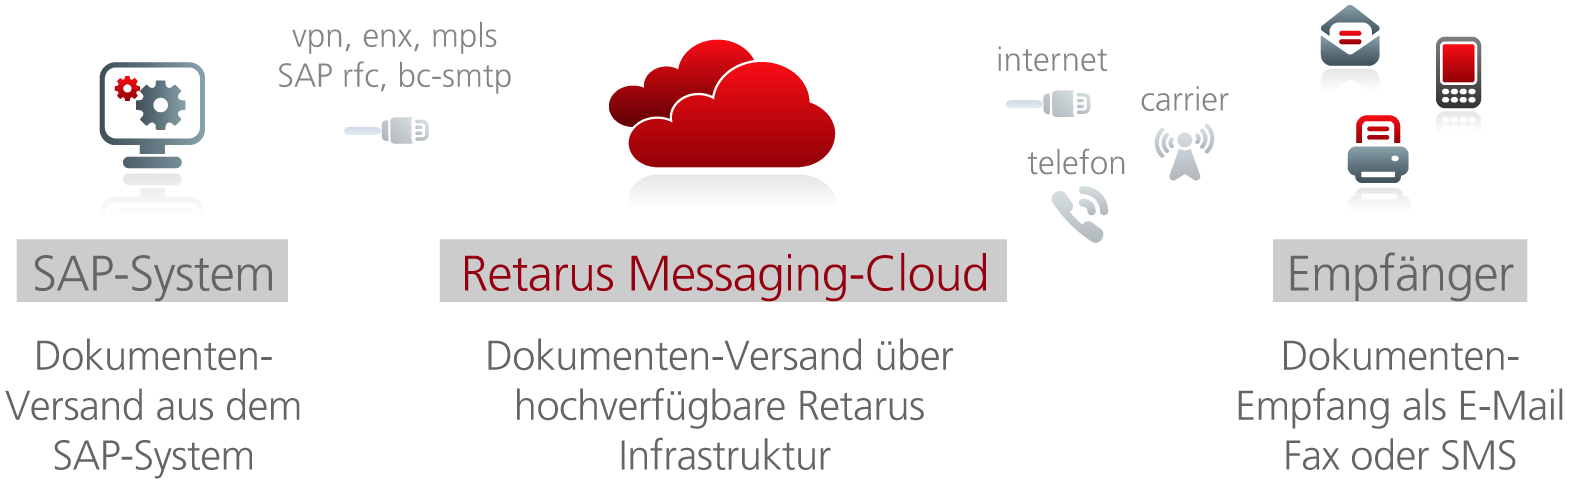 DE_20130924_PI_retarus_messaging-services-for-sap_print